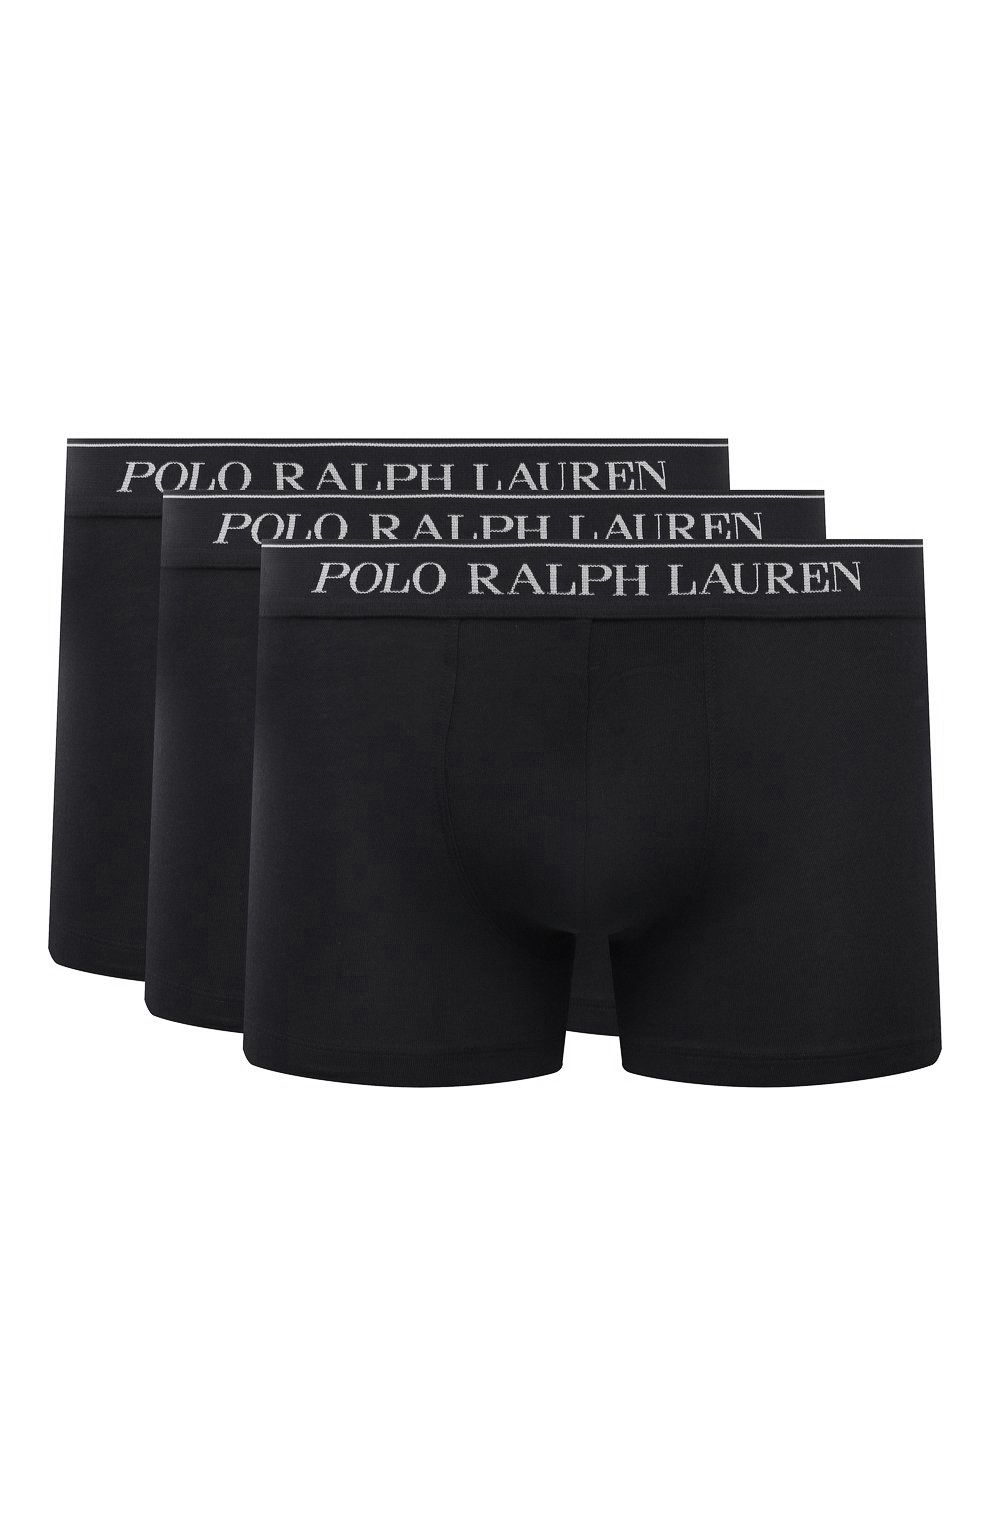 Polo Ralph Lauren - Boxershort Zwart 078600-001-L